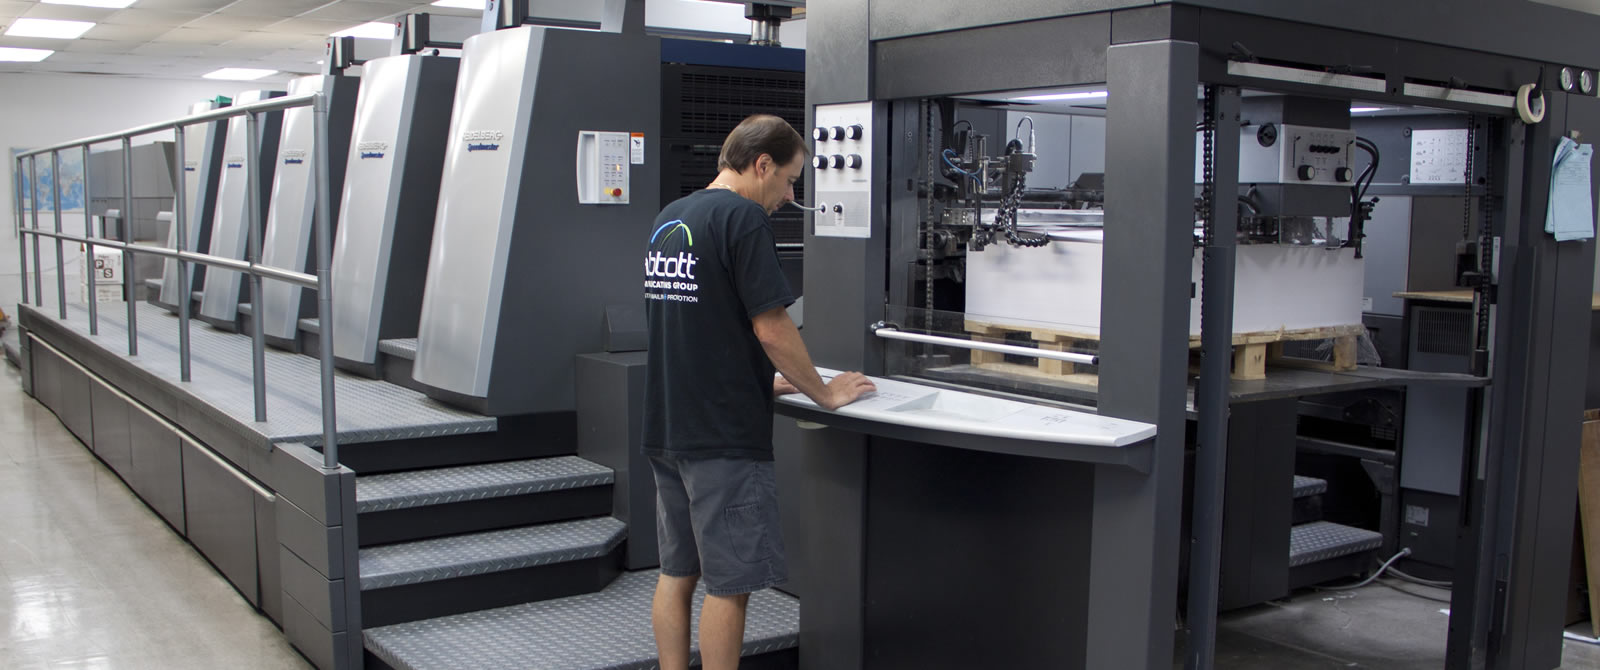 Abbott printing equipment